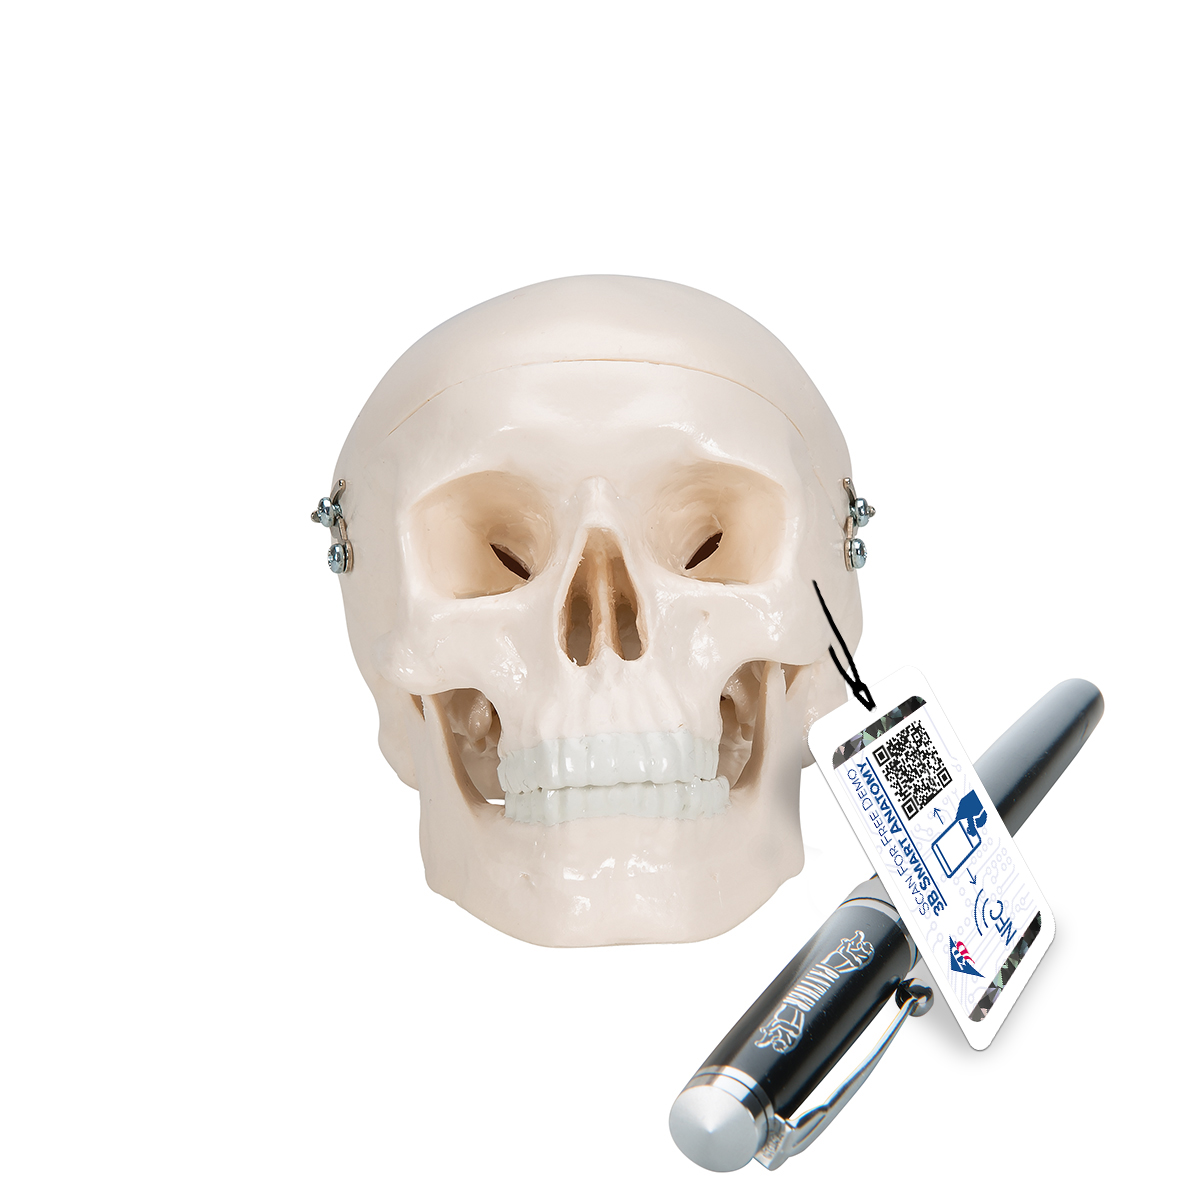 Mini Anatomie Modell Menschlicher Schädel, 3-teilig (Kalotte, Schädelbasis & Unterkiefer) - 3B Smart Anatomy, Bestellnummer 1000041, A18/15, 3B Scientific